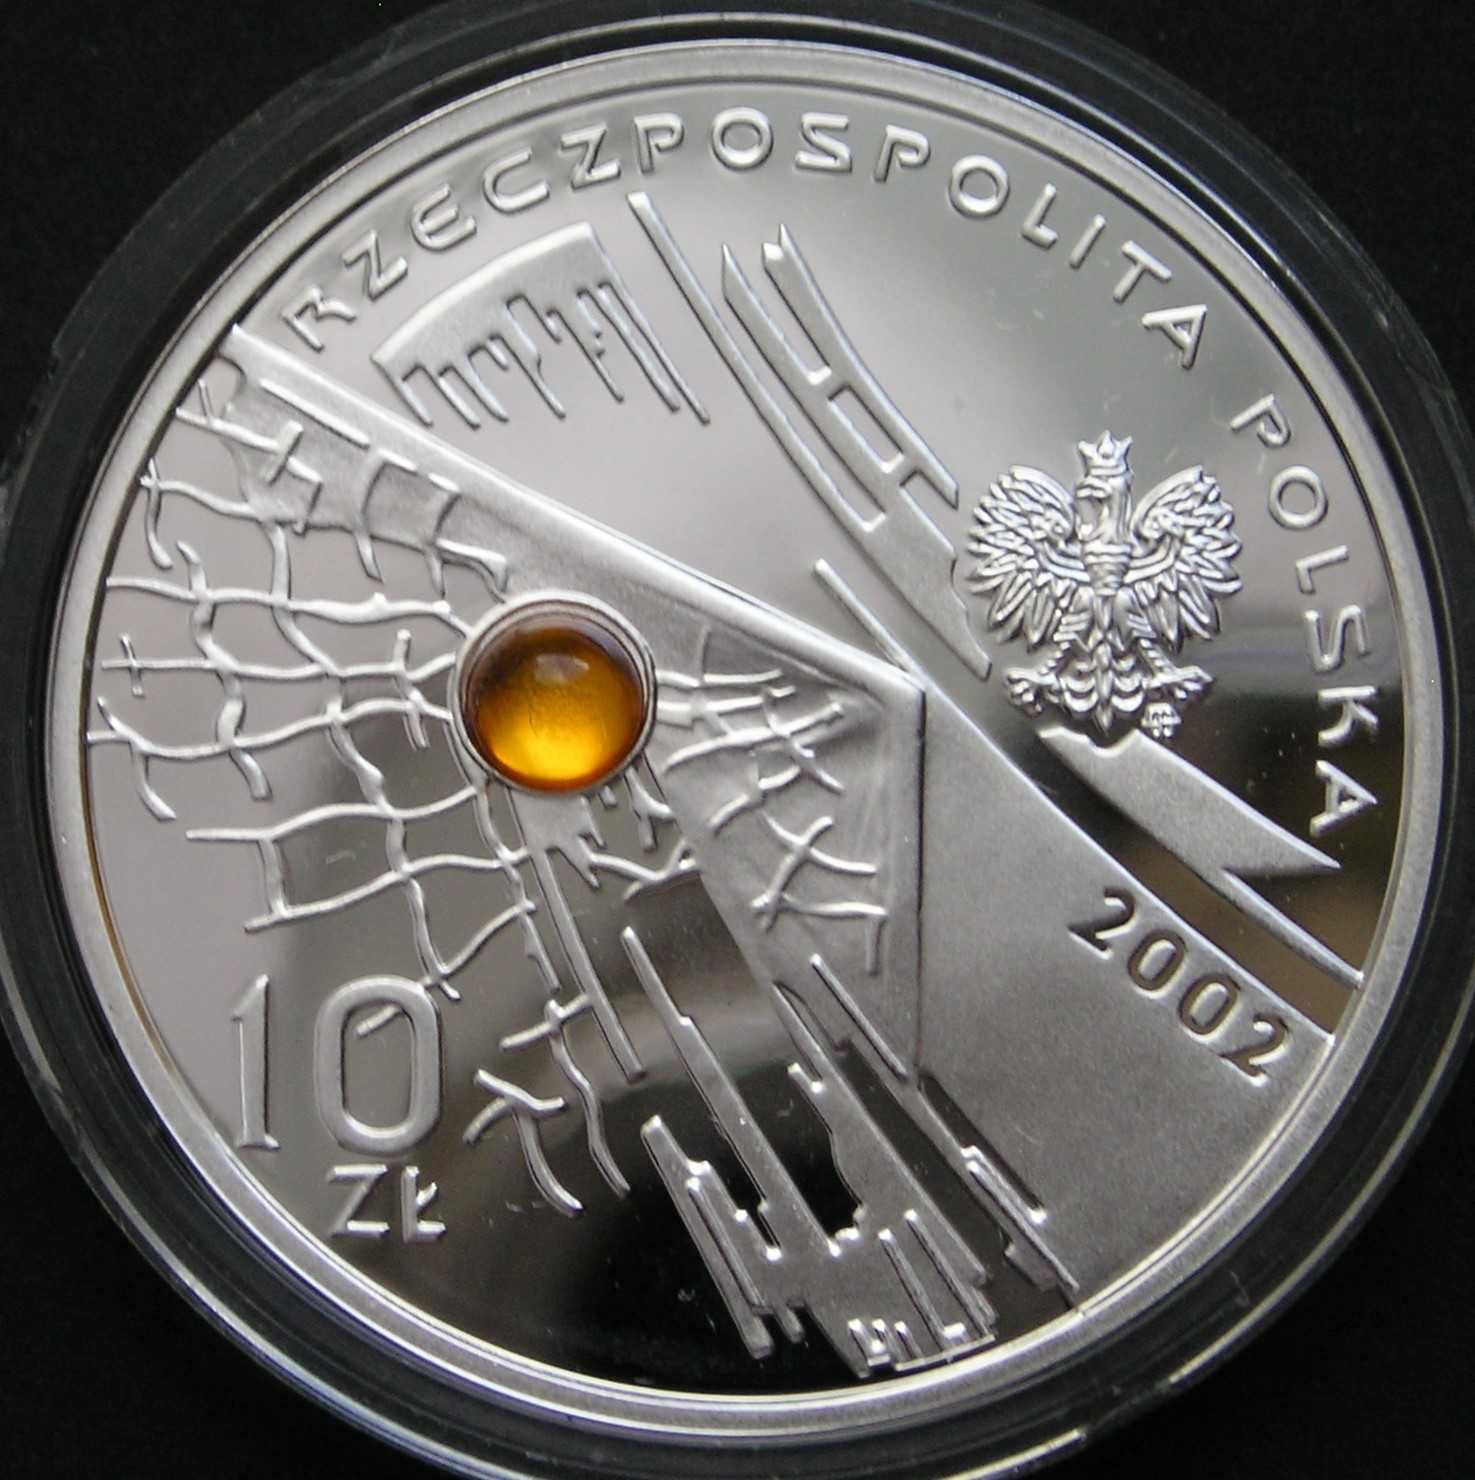 Polska 10 złotych 2002 - MŚ Japonia Korea - srebro bursztyn - stan 1